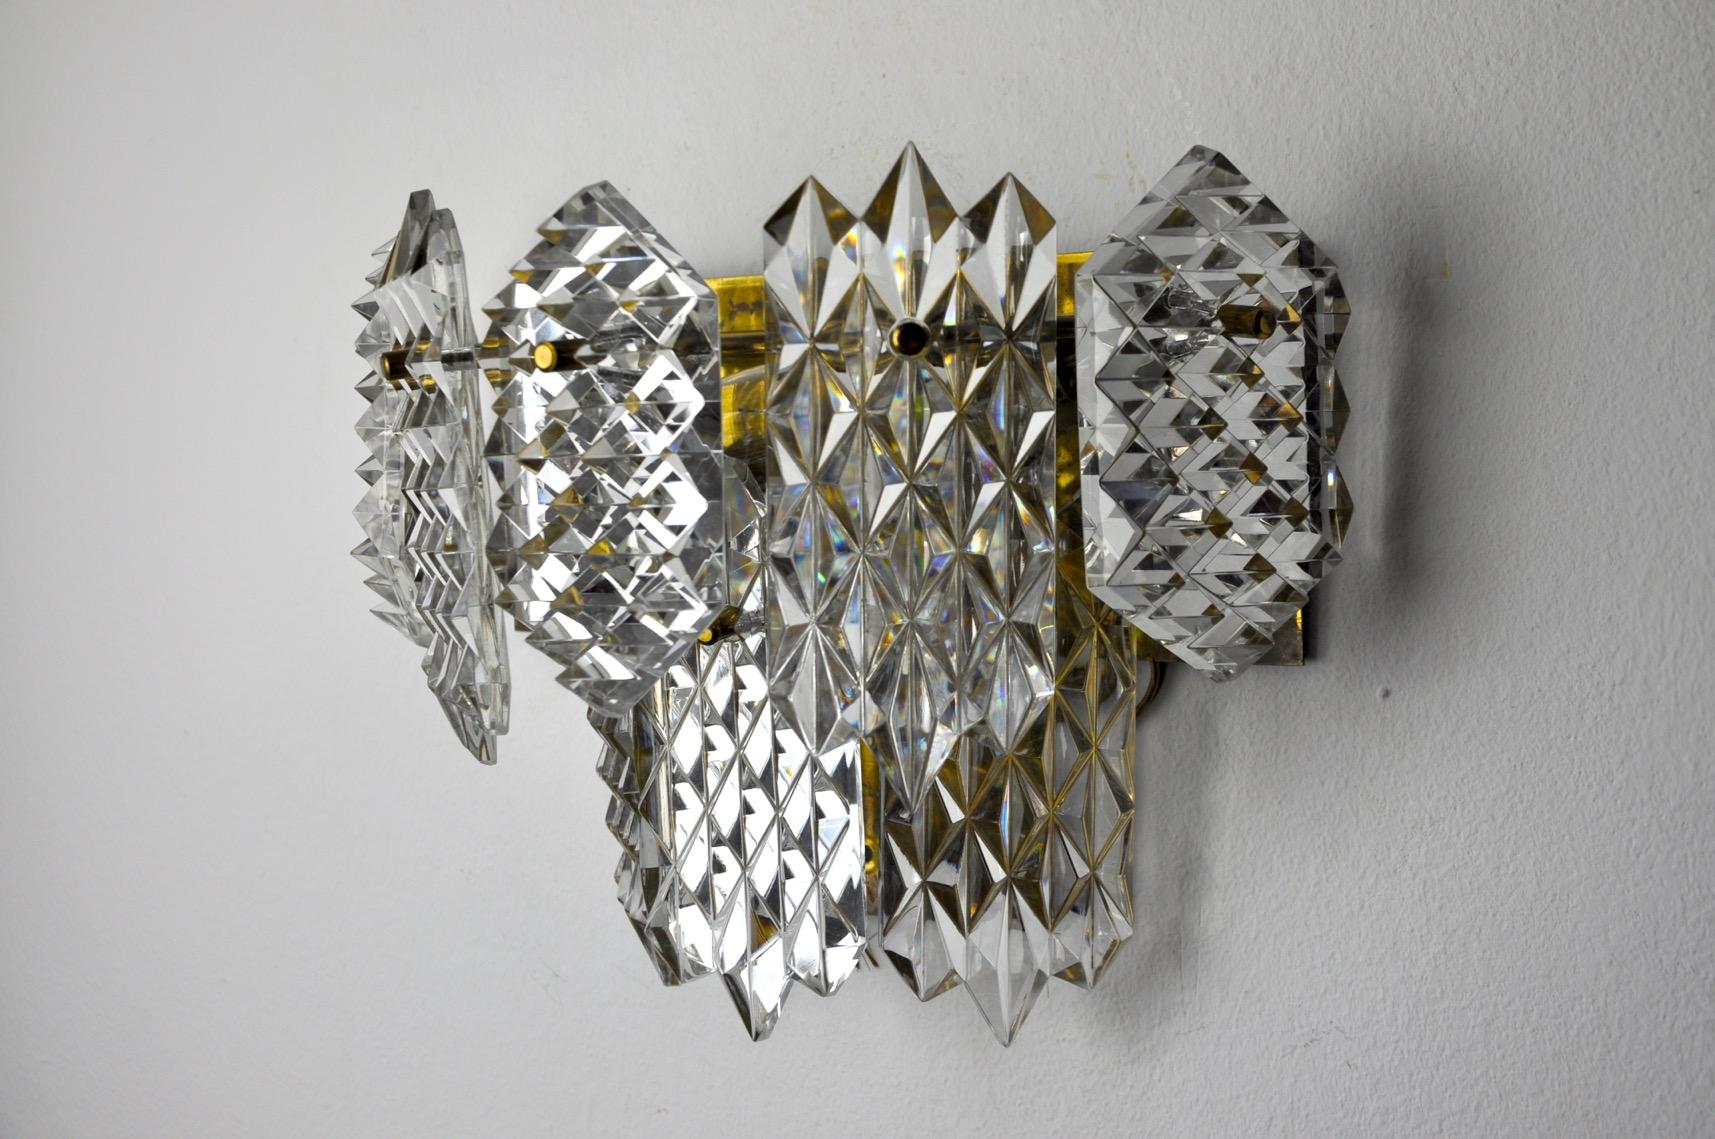 Superb kinkeldey Wandleuchte entworfen und hergestellt in Deutschland in den 1970er Jahren.8 geschliffene Kristalle auf zwei Ebenen eines goldenen Metallstruktur verteilt. Sehr schönes Objektdesign, das Ihr Interieur wunderbar zu beleuchten weiß.